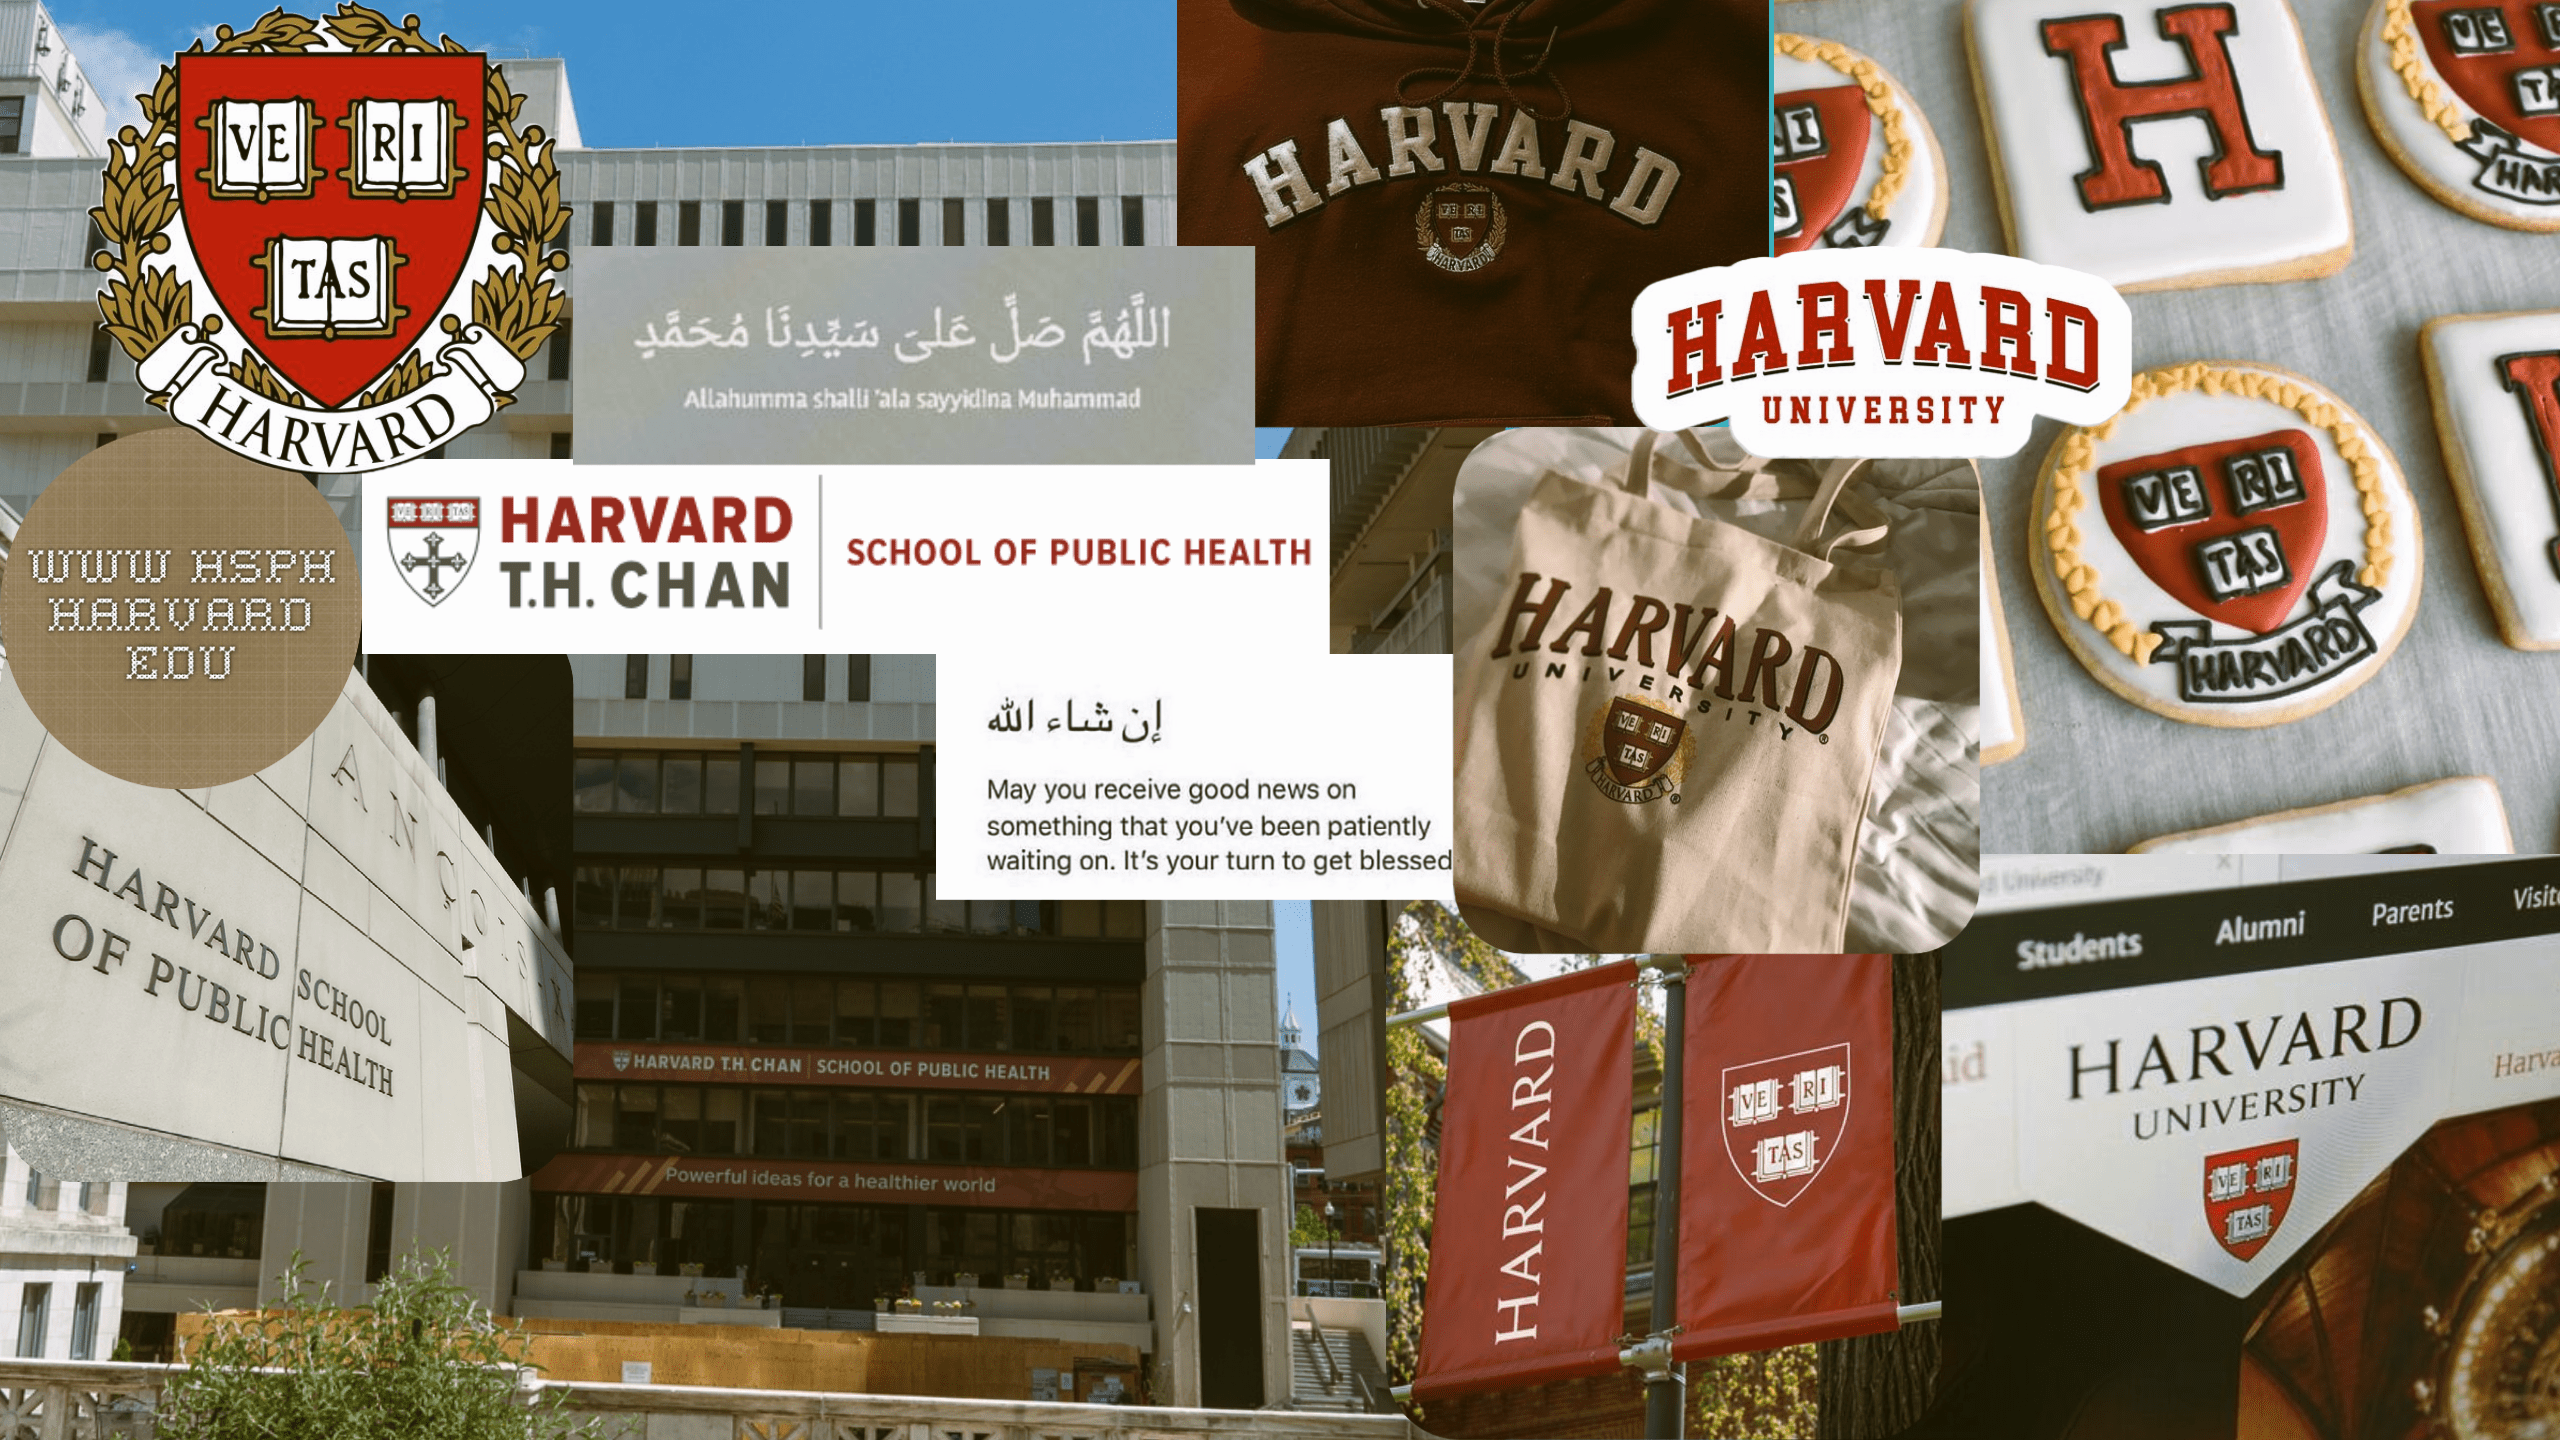 Harvard School of Public Health dekstop